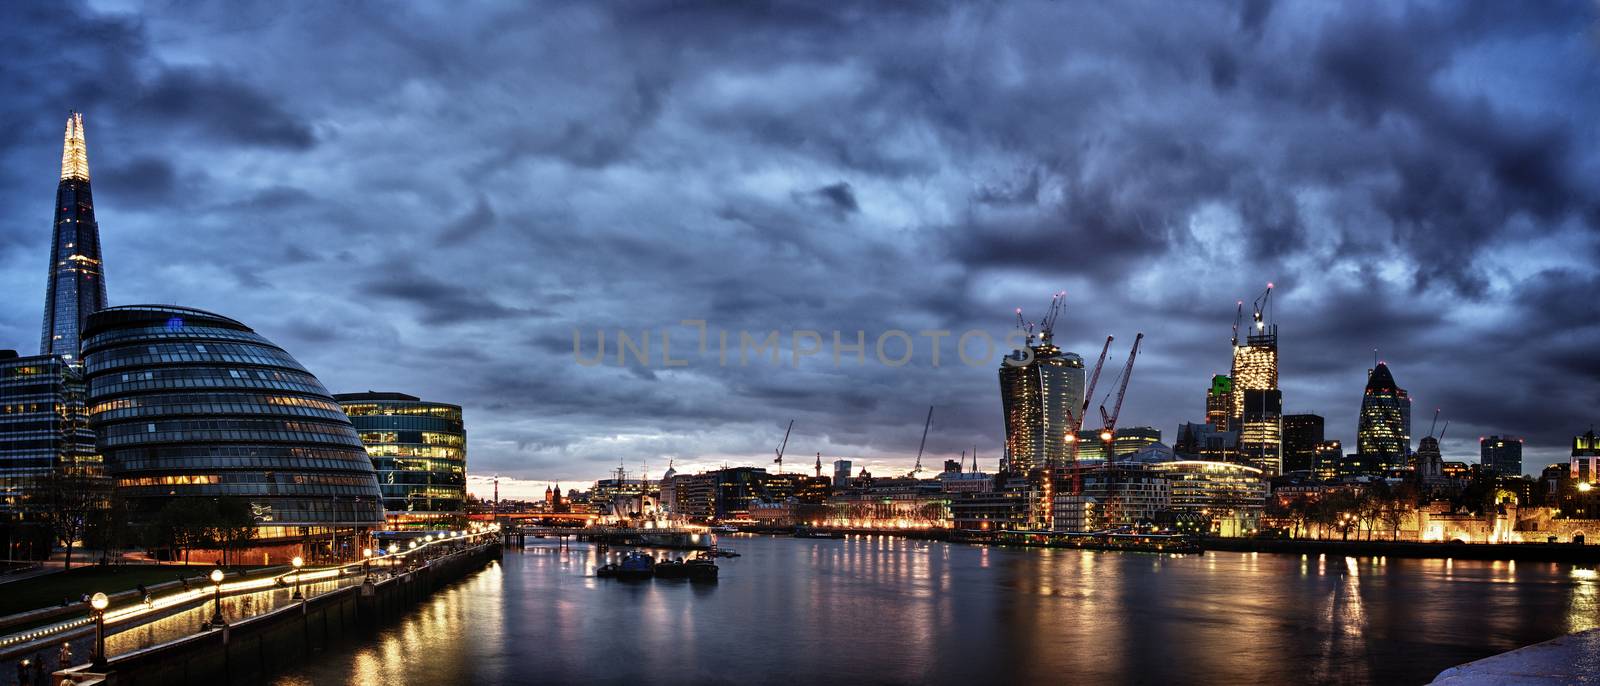 London Panorama by pazham